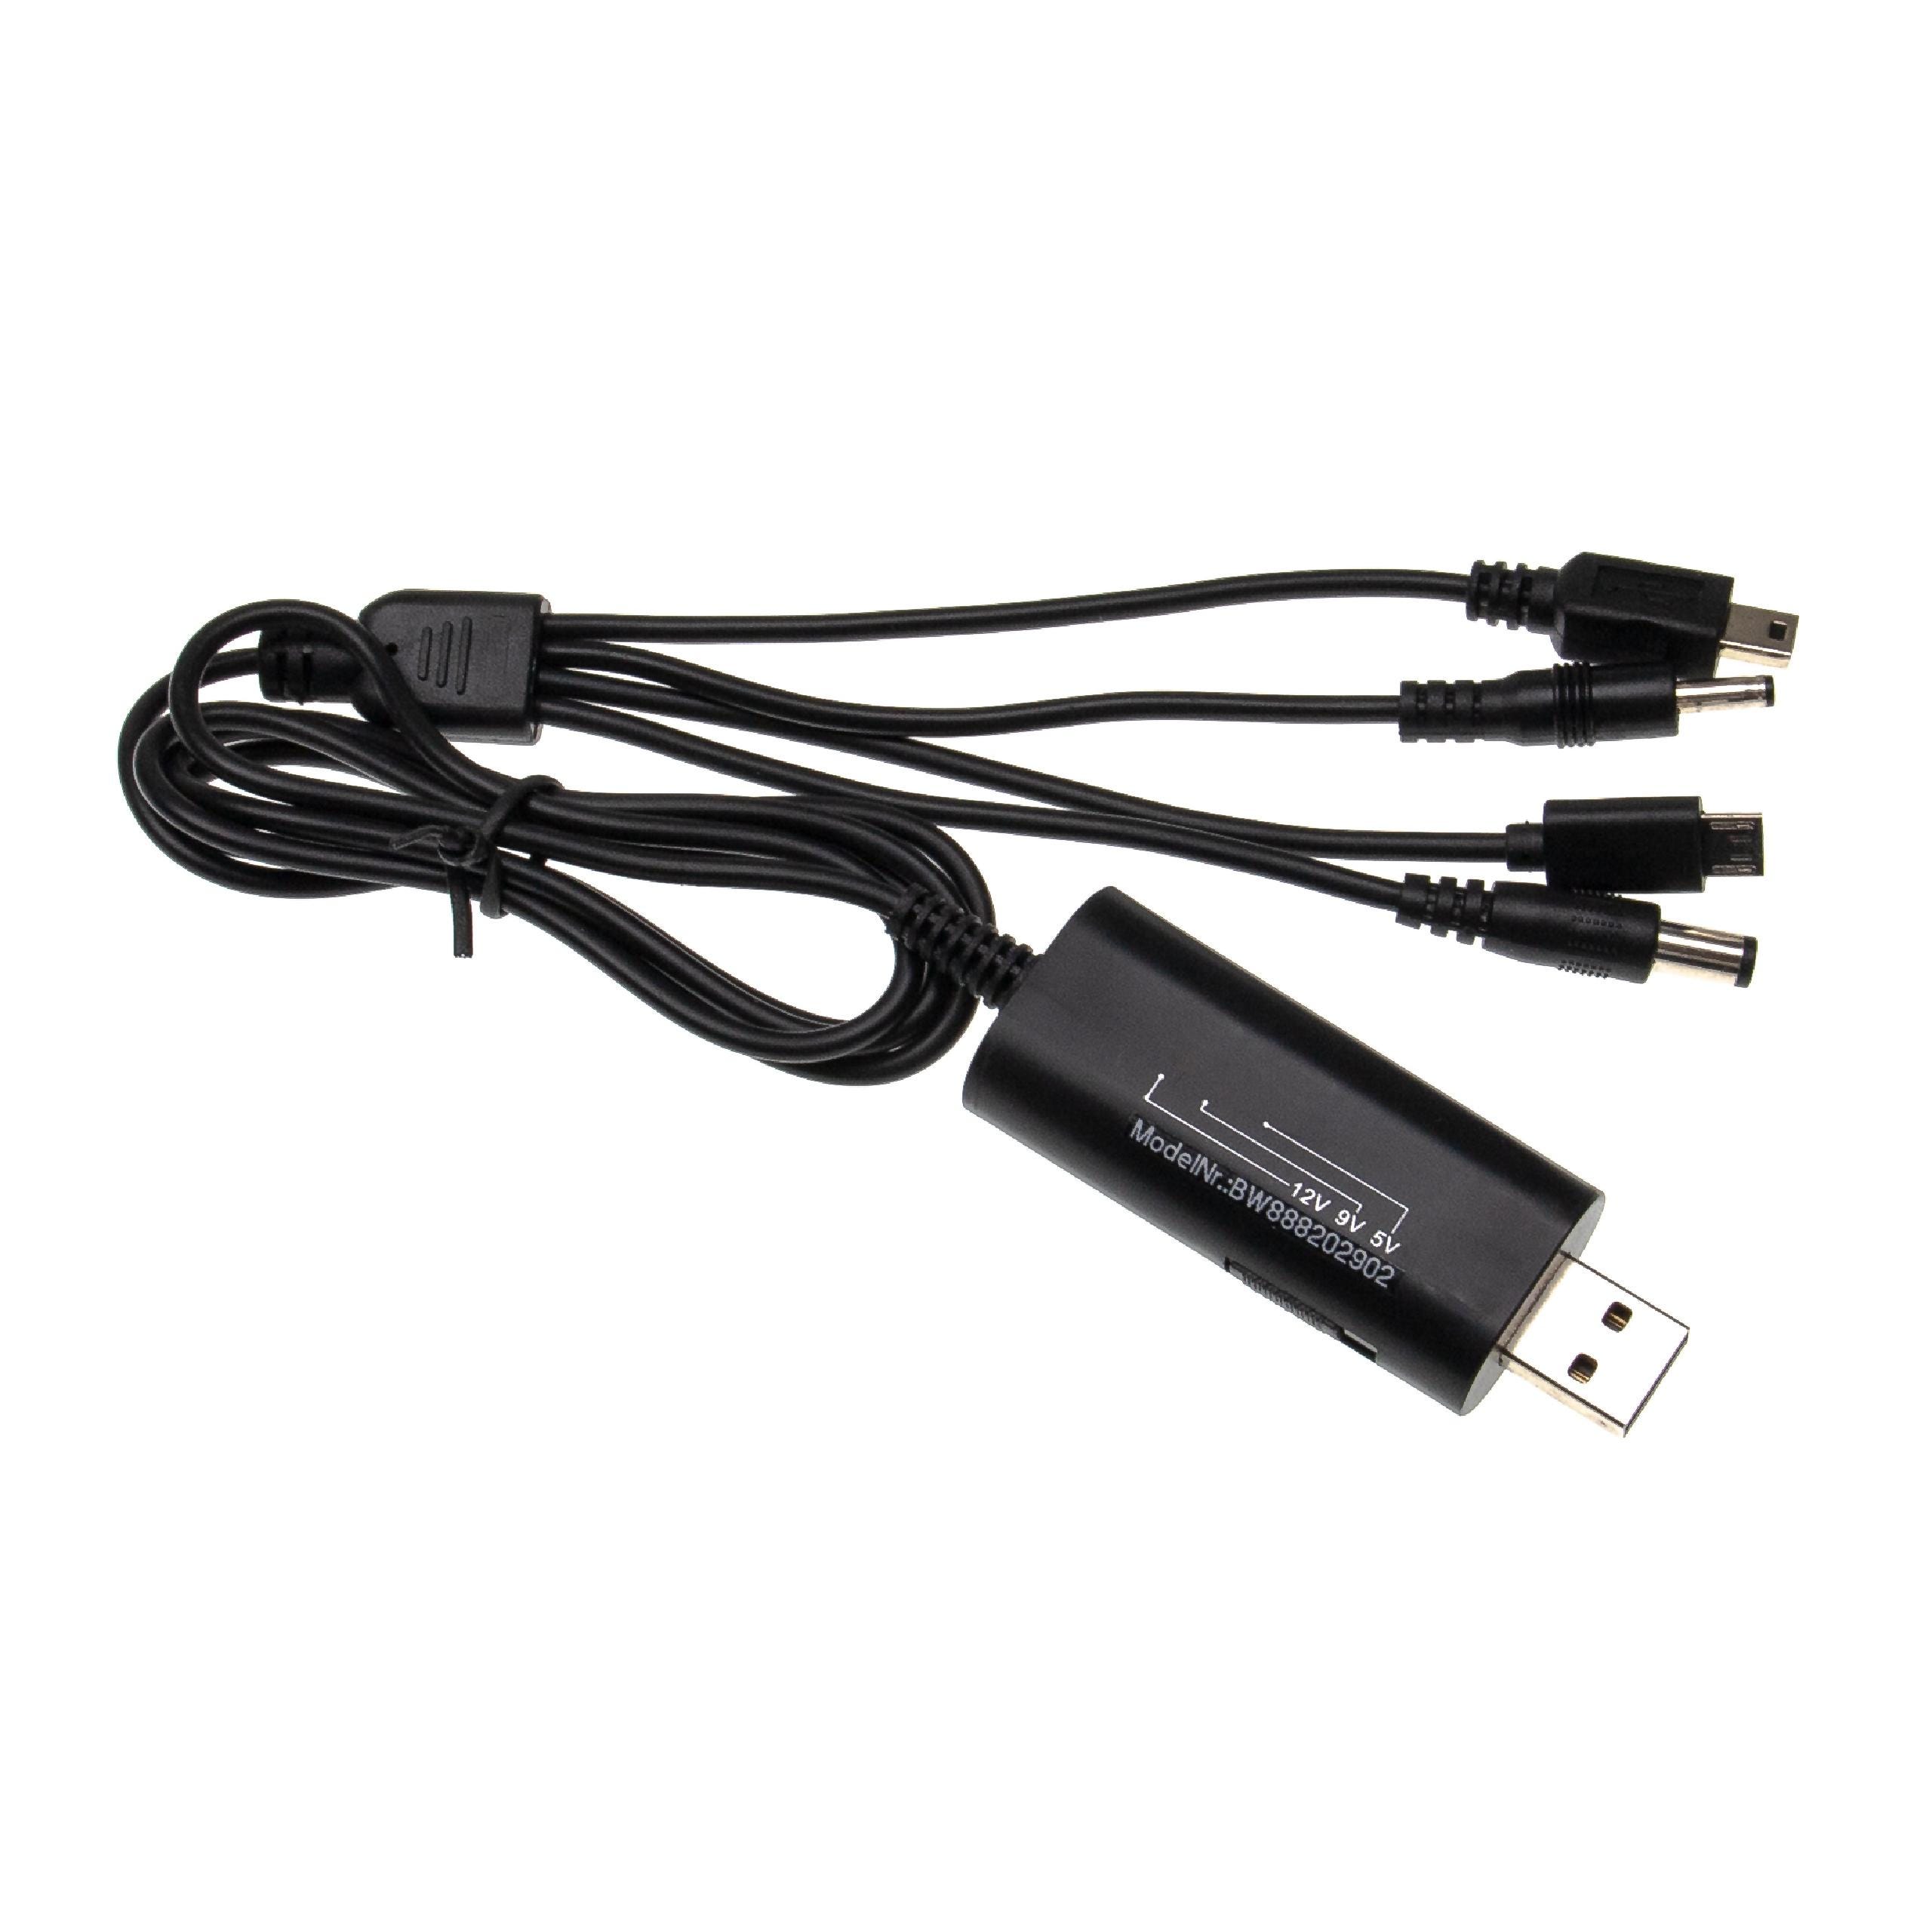 Vhbw Câble chargeur USB multiple pour divers appareils tels que